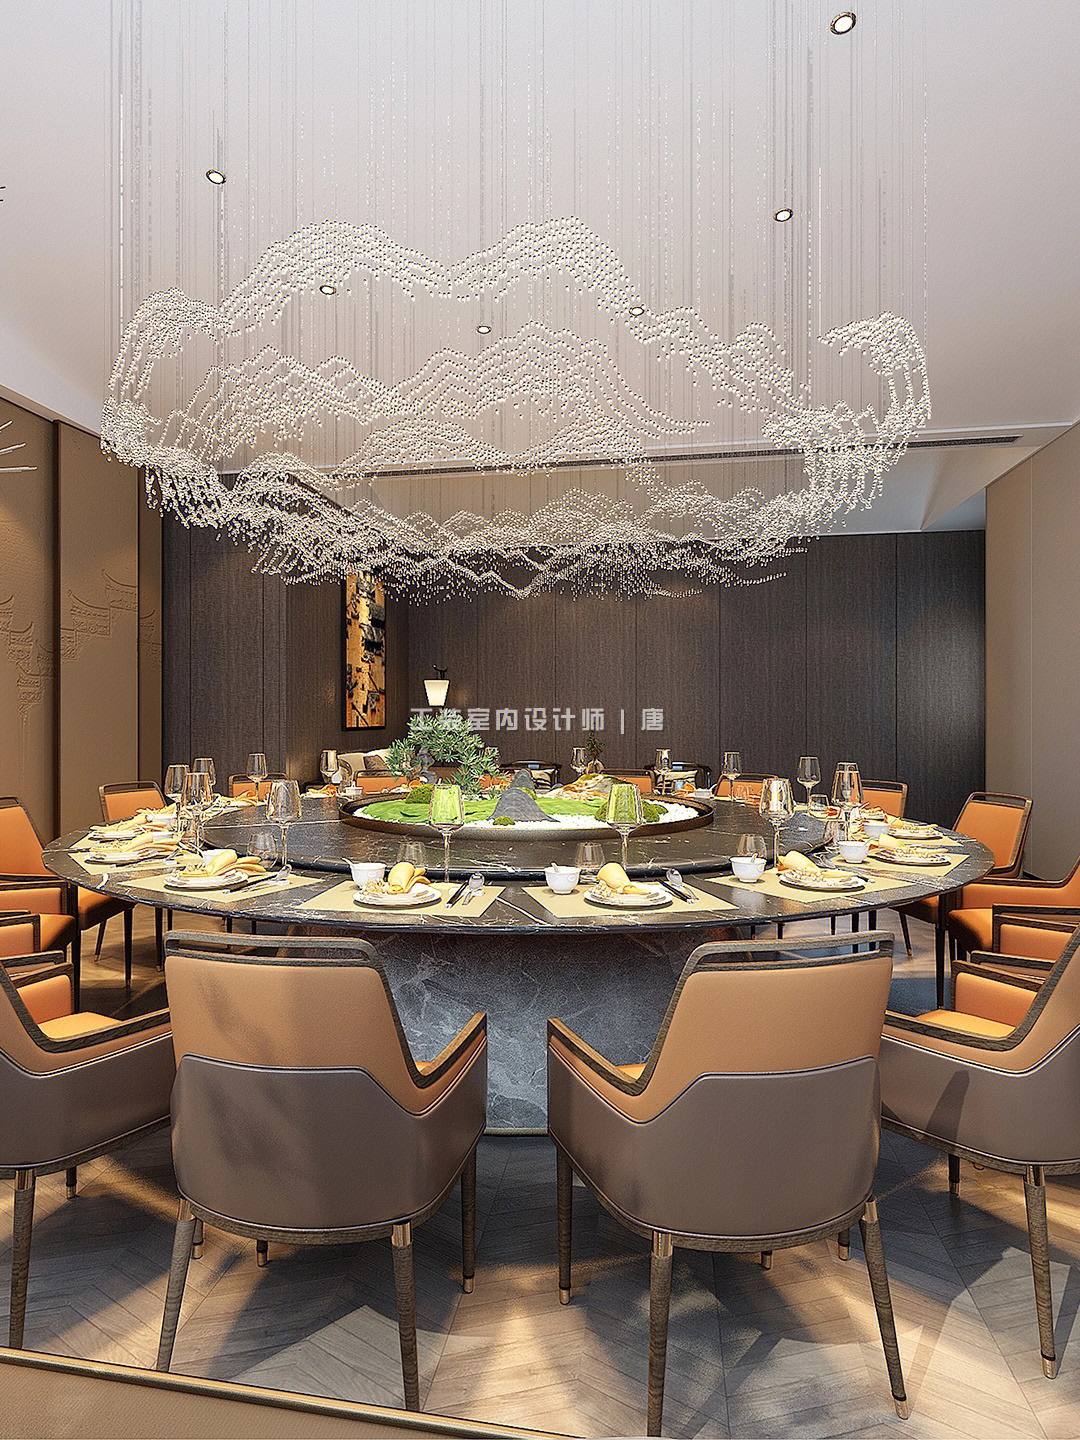 分享36套独具特色的粤菜餐厅包房设计案例